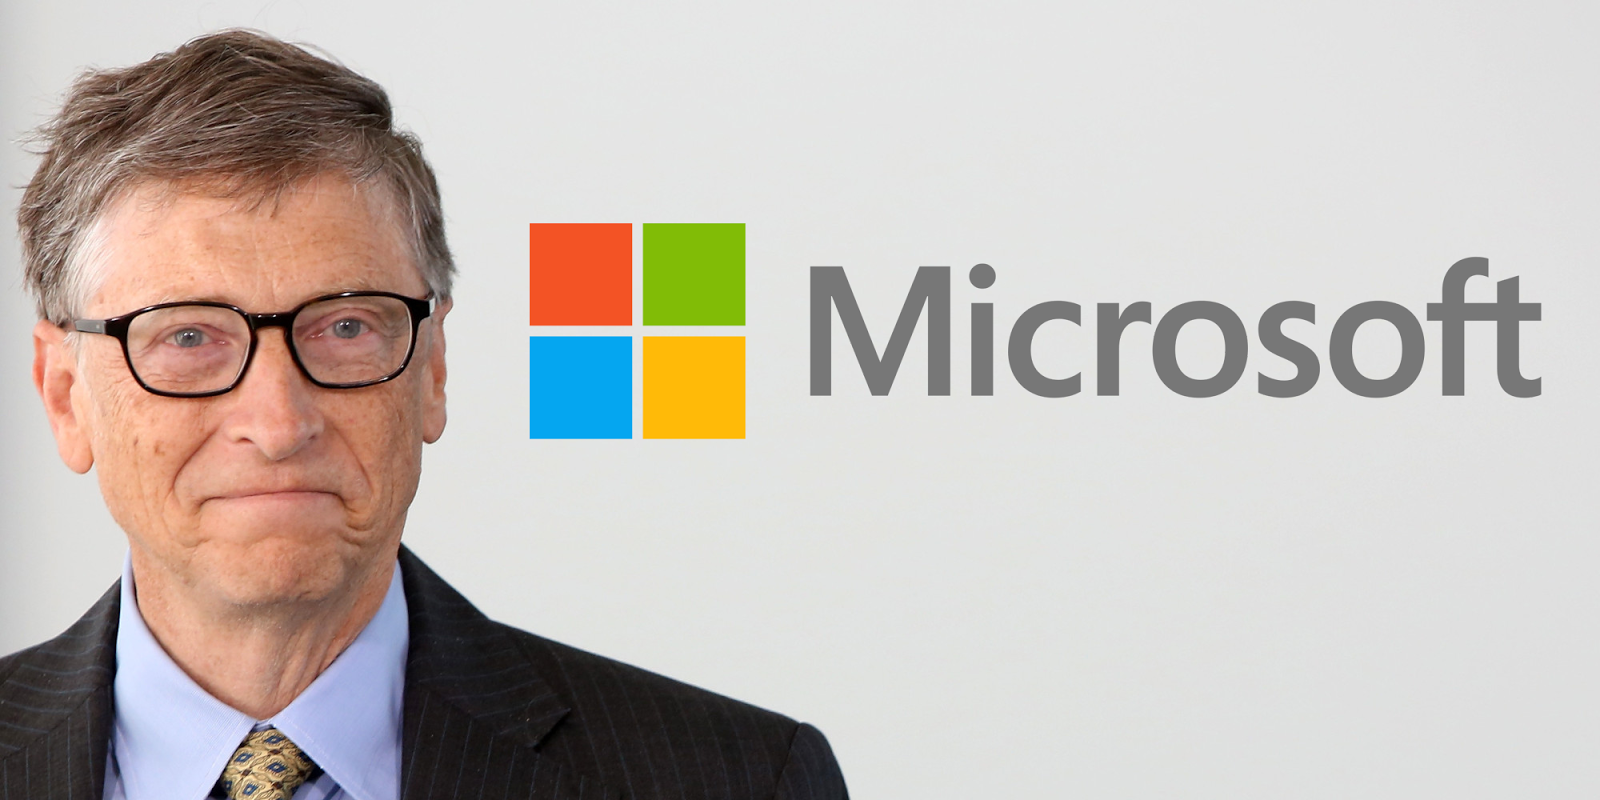 Оф сайт гейтс. Билл Гейтс Майкрософт. Билл Гейтс основатель Microsoft. Основа́тель компа́нии Microsoft Билл Гейтс. Билл Гейтс фото Майкрософт.